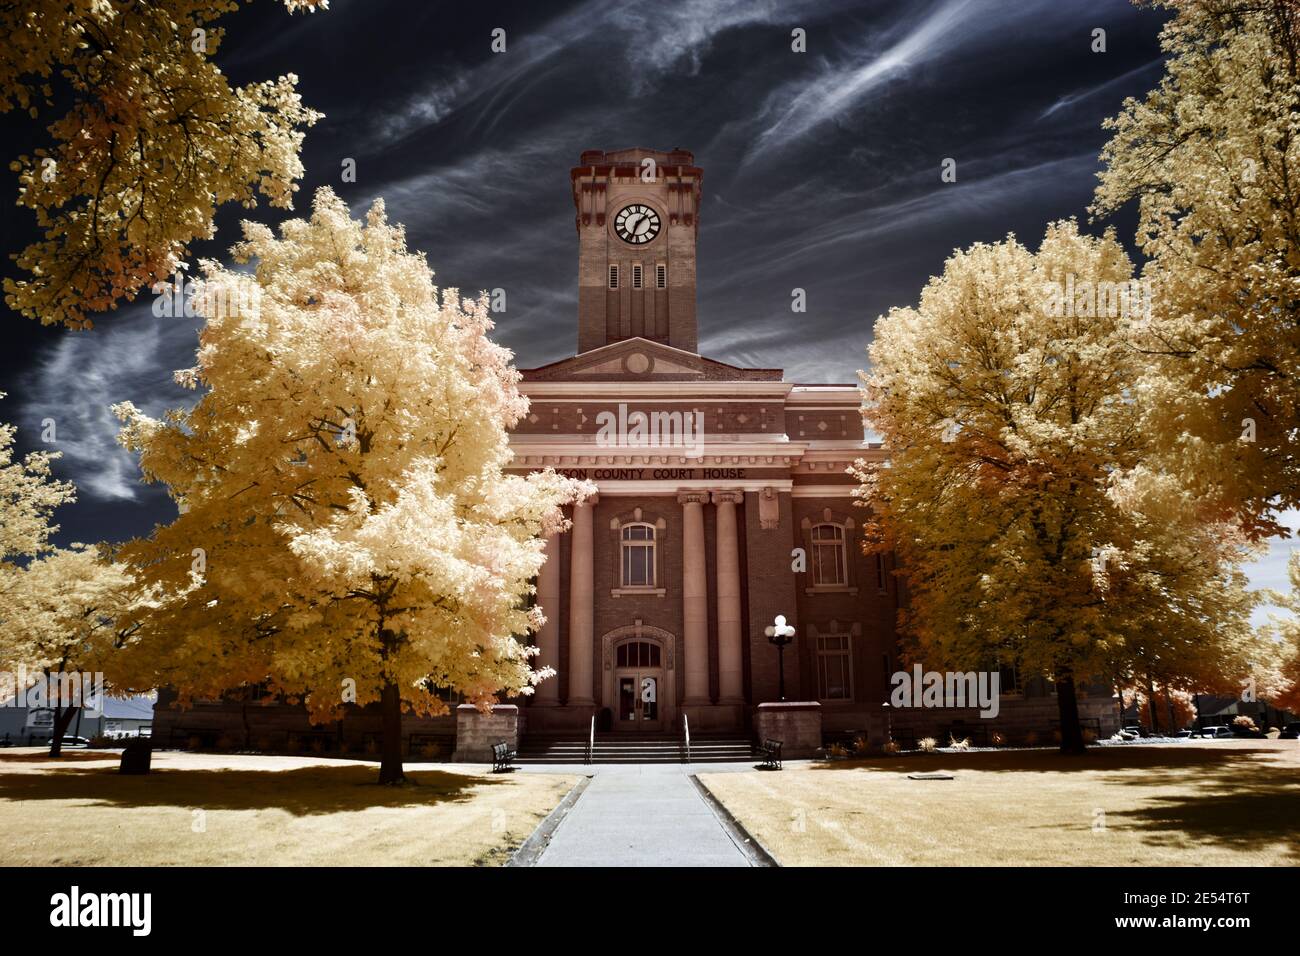 Immagine a infrarossi a falsi colori del tribunale della contea di Jackson a Brownstown, IN. Per catturare questa immagine è stato utilizzato un filtro a infrarossi da 665 nm. Foto Stock